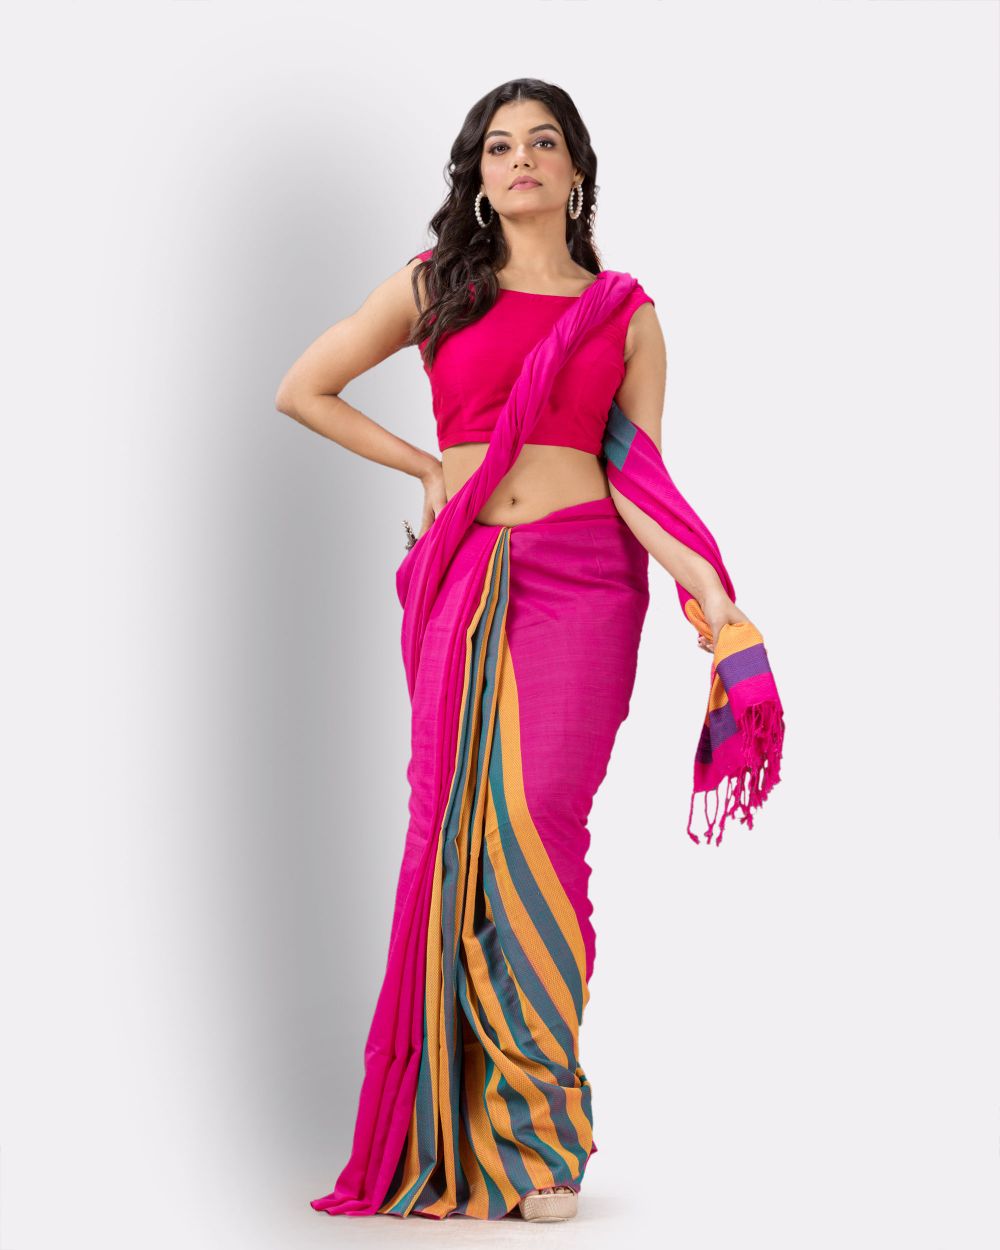 Pantone pink handwoven textured cotton bengal saree